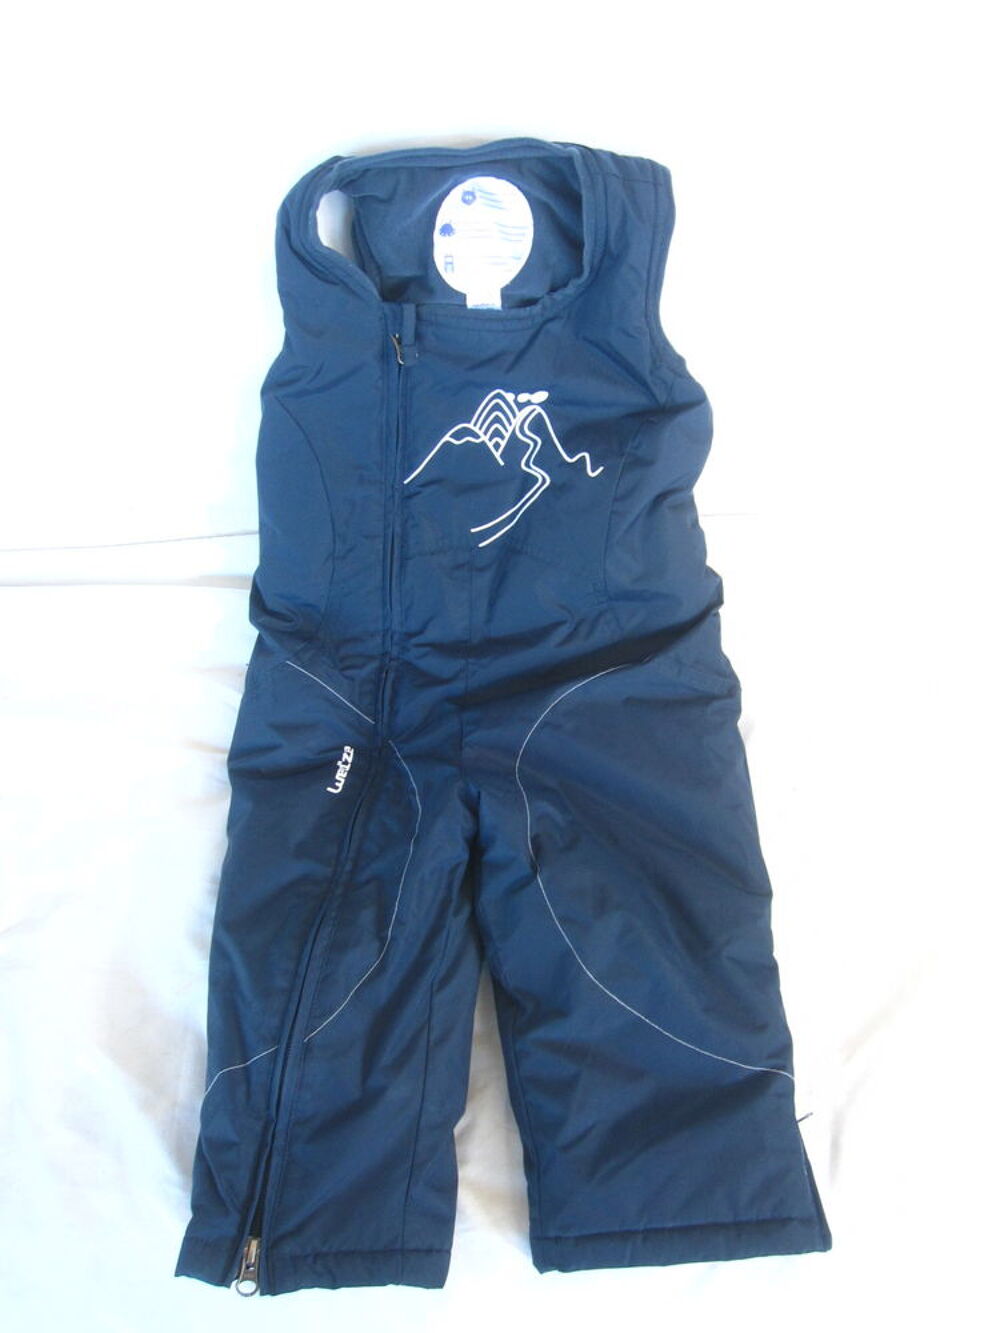 Pantalon de ski decathon bleu marine 2 ans Vtements enfants